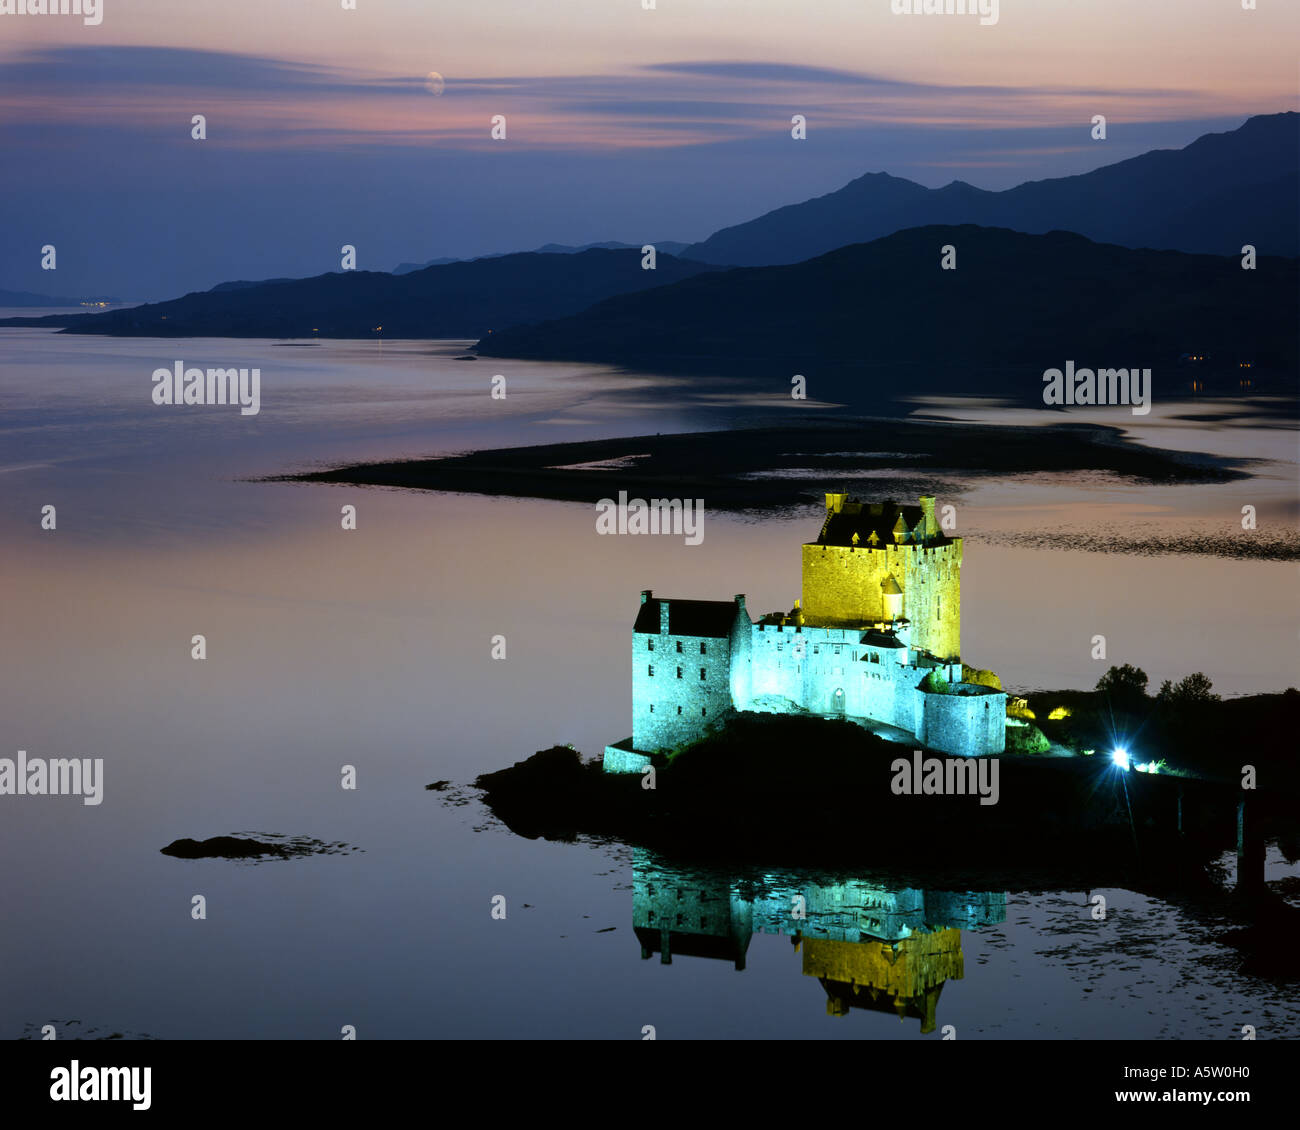 GB - SCHOTTLAND: Eilean Donan Castle in den Highlands Stockfoto